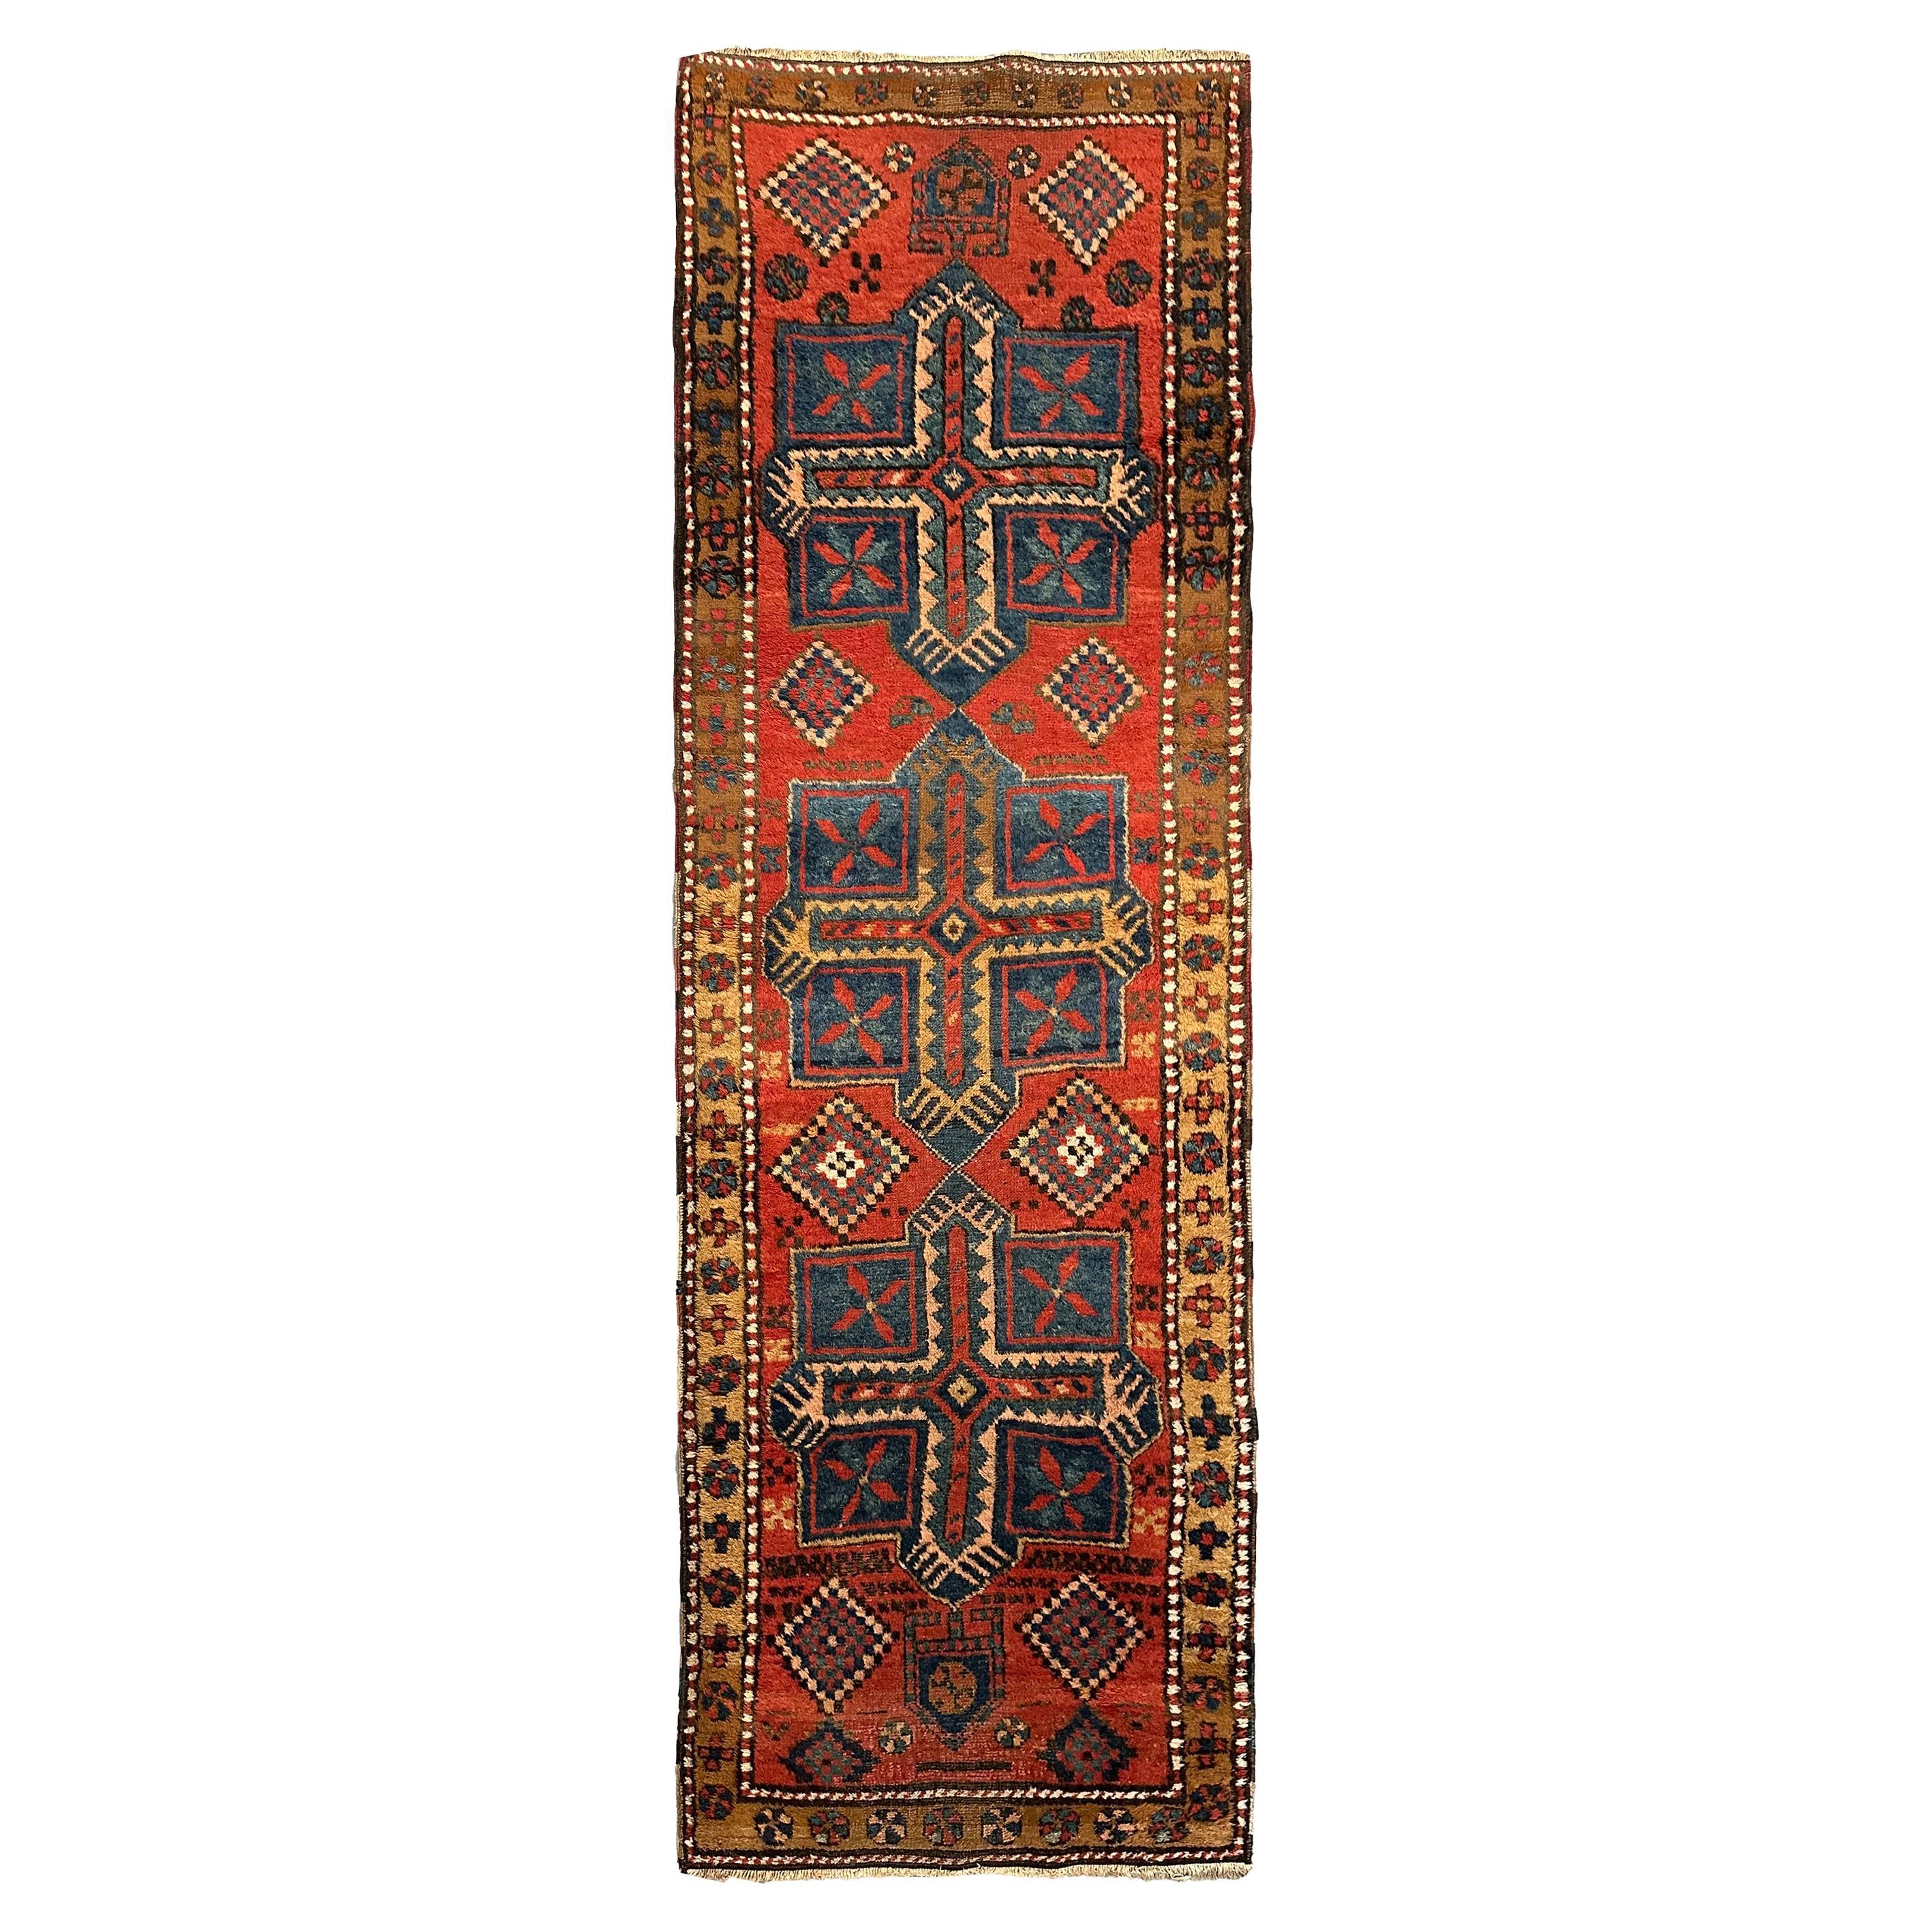 Tapis tribal géométrique fait à la main 1900 89 cm x 262 cm 3x9 pieds en vente